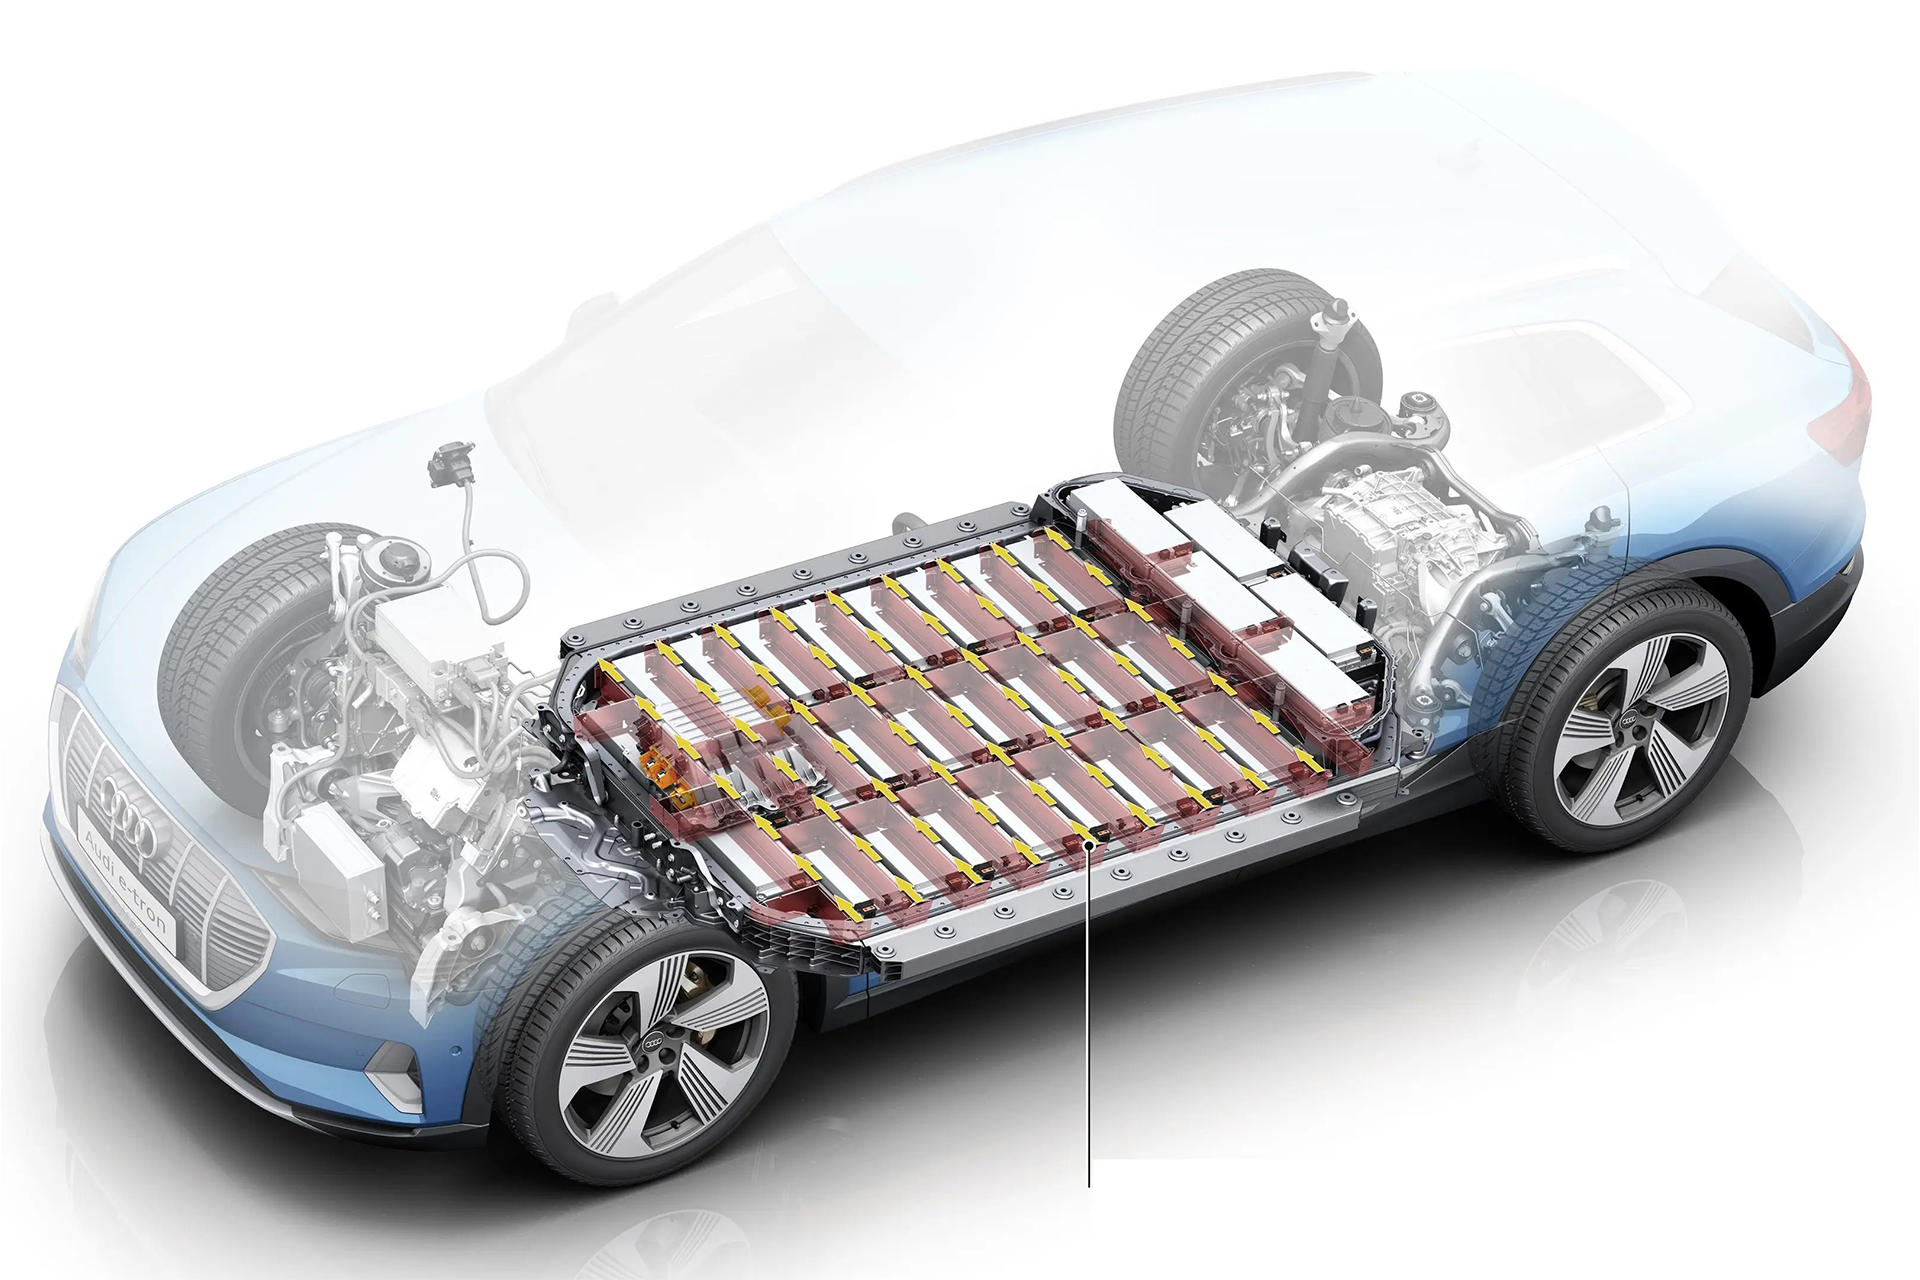 Saiba quanto custa para trocar a bateria de um carro elétrico já que as baterias são um dos componentes mais caros desse tipo de veículo